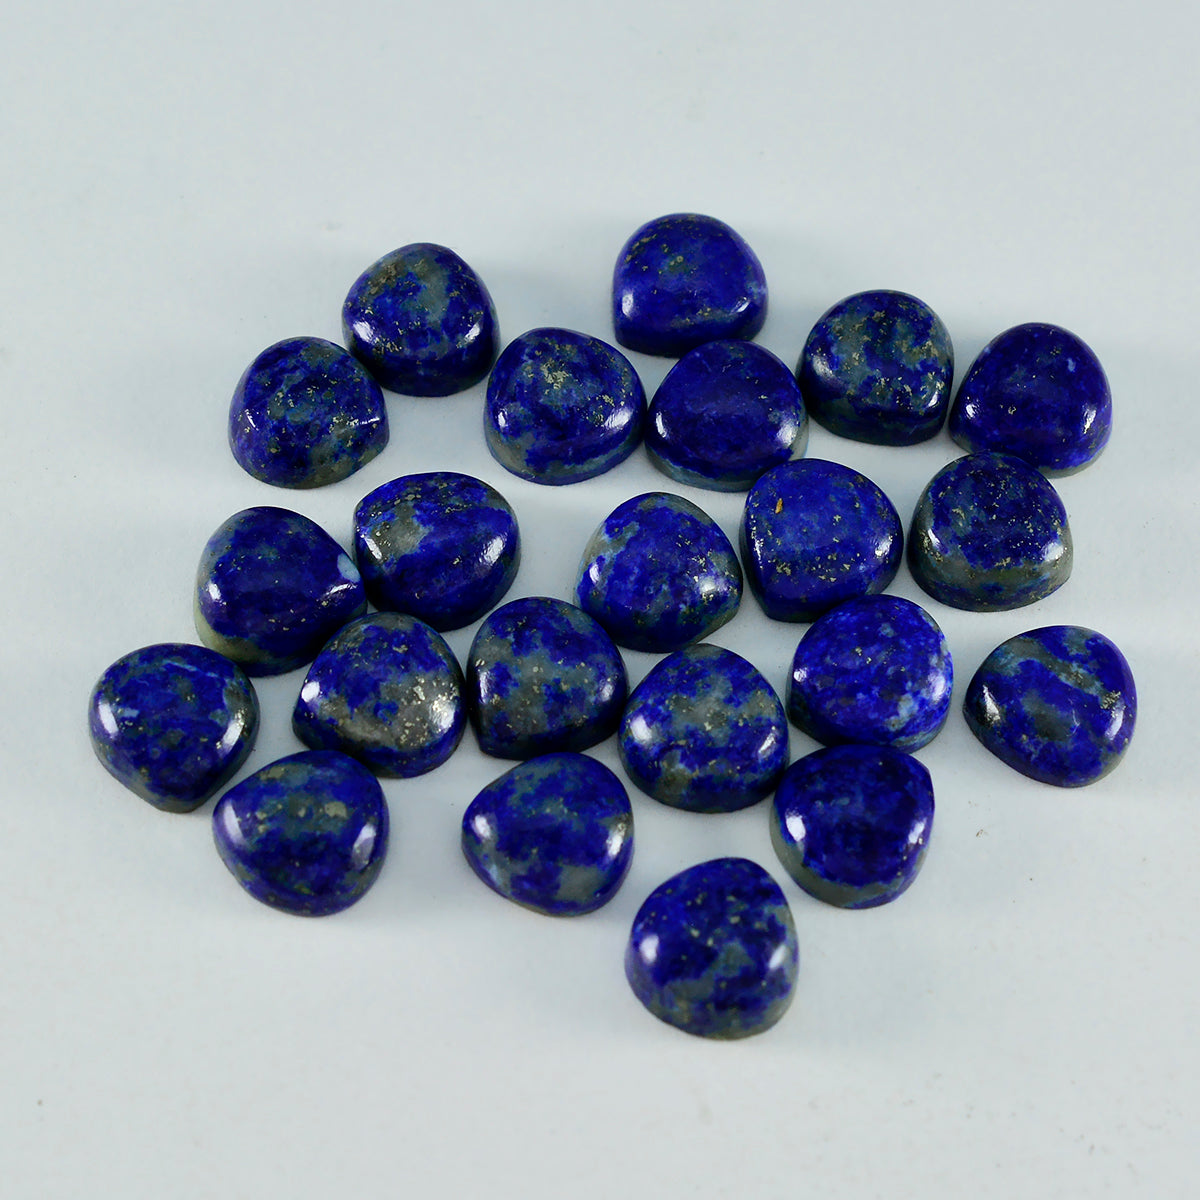 Riyogems 1 pieza cabujón de lapislázuli azul 6x6 mm forma de corazón gemas sueltas de calidad aaa